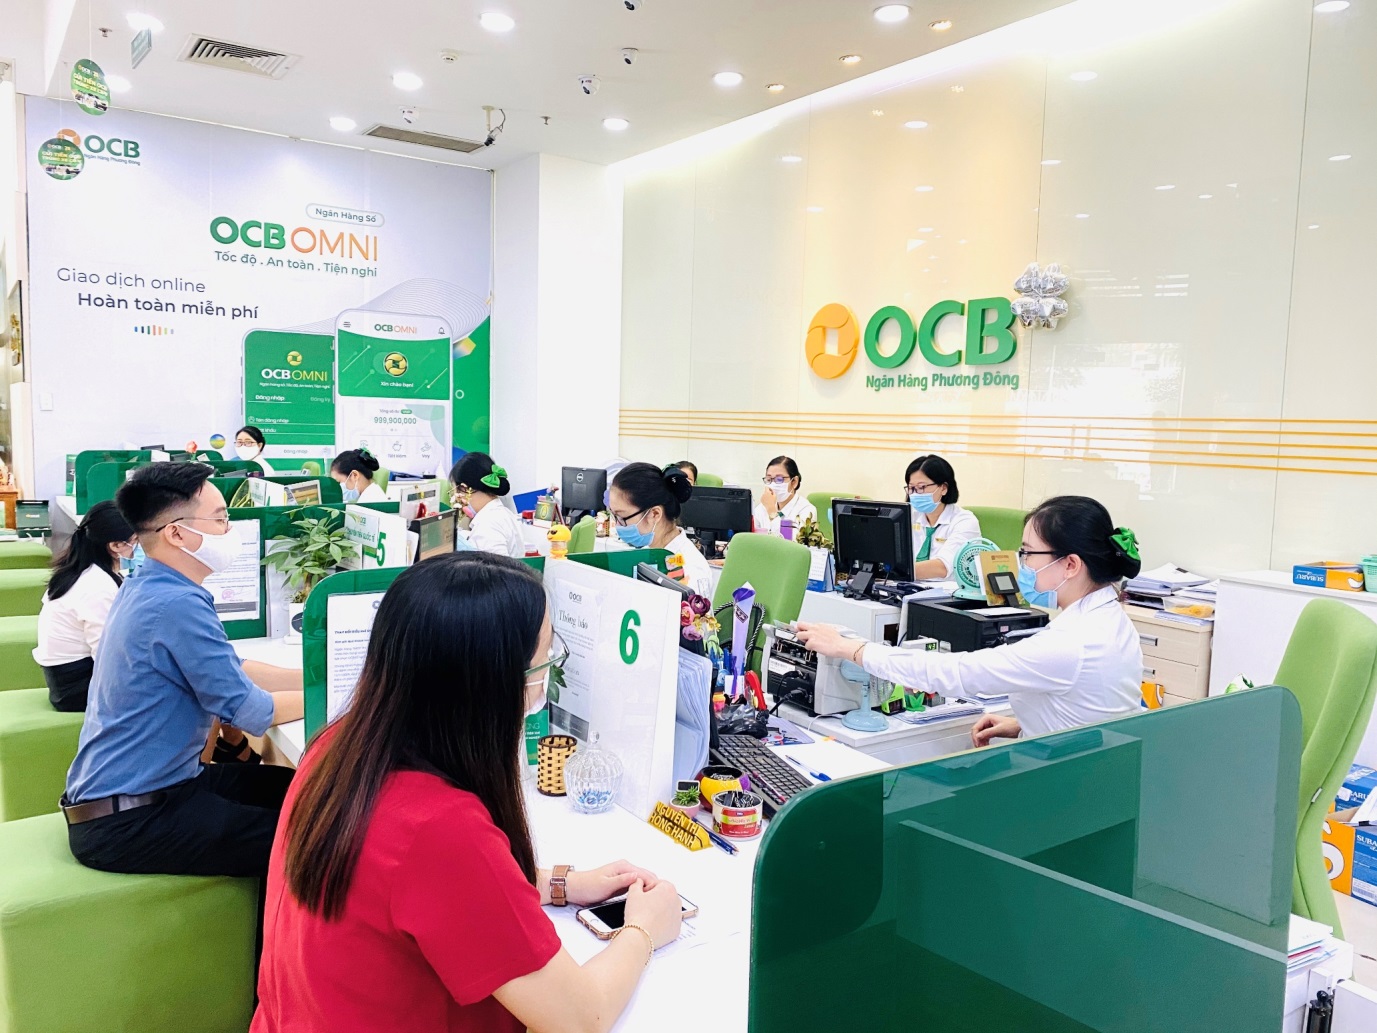 Tích cực đồng hành cùng khách hàng, OCB vẫn đảm bảo kinh doanh hiệu quả - Ảnh 1.